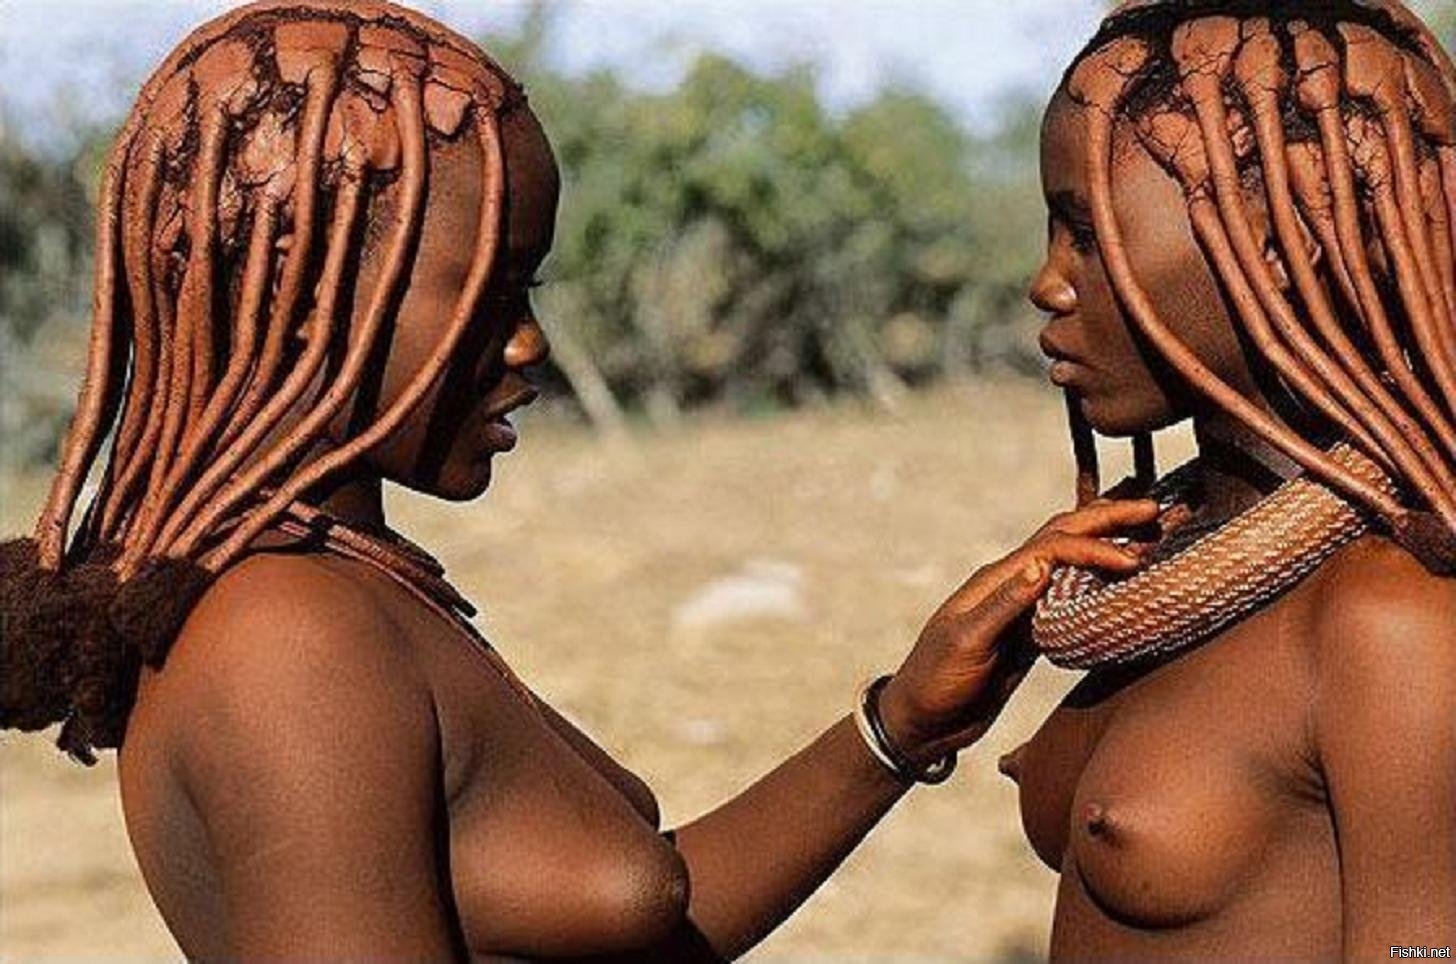 Красивые африканские девушки 61 фото - секс фото 